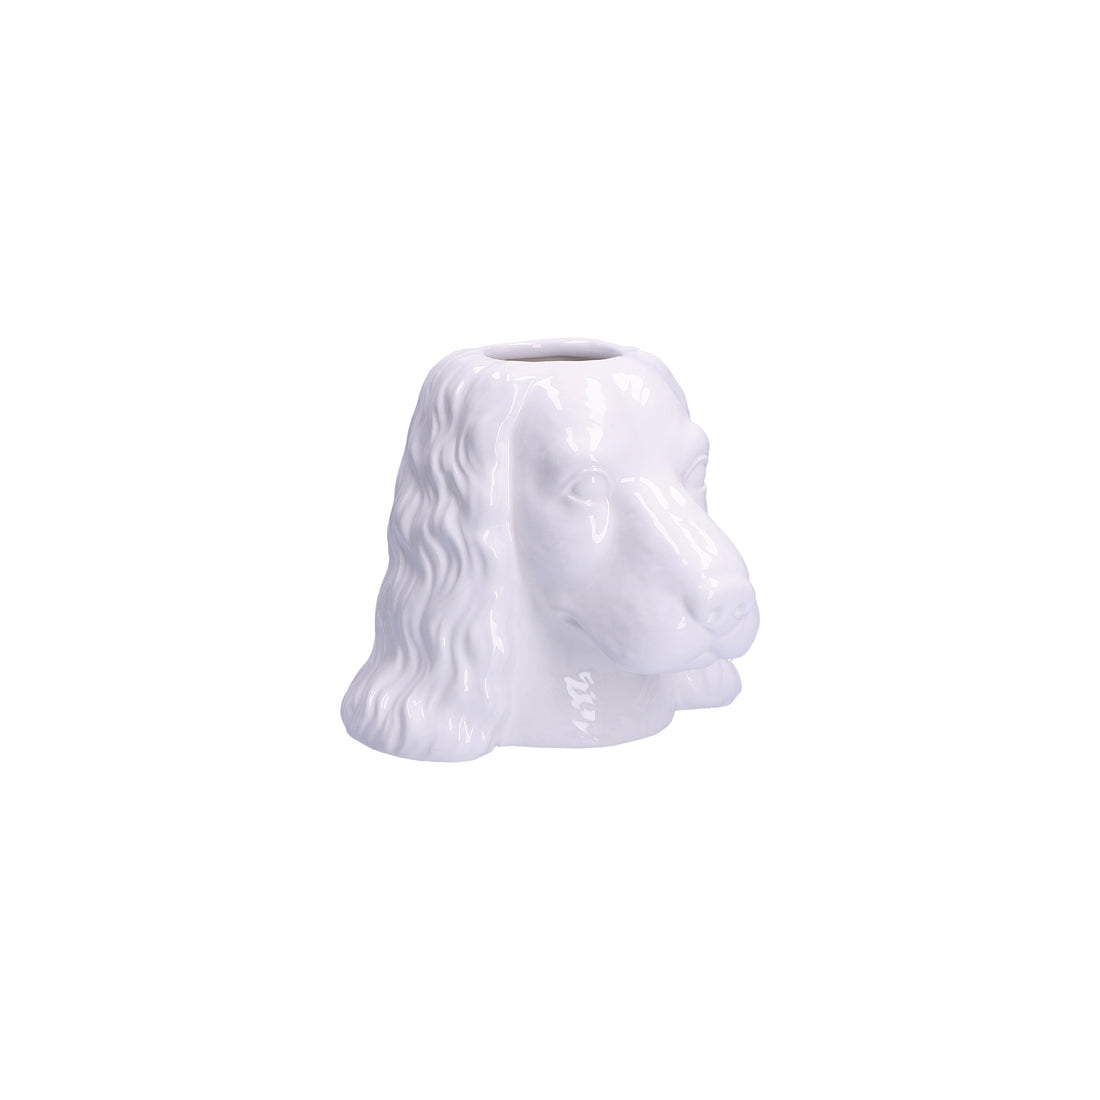 RITUALI DOMESTICI - Animalando Vaso Cachepot Tarcisio Bianco Ceramica H17cm